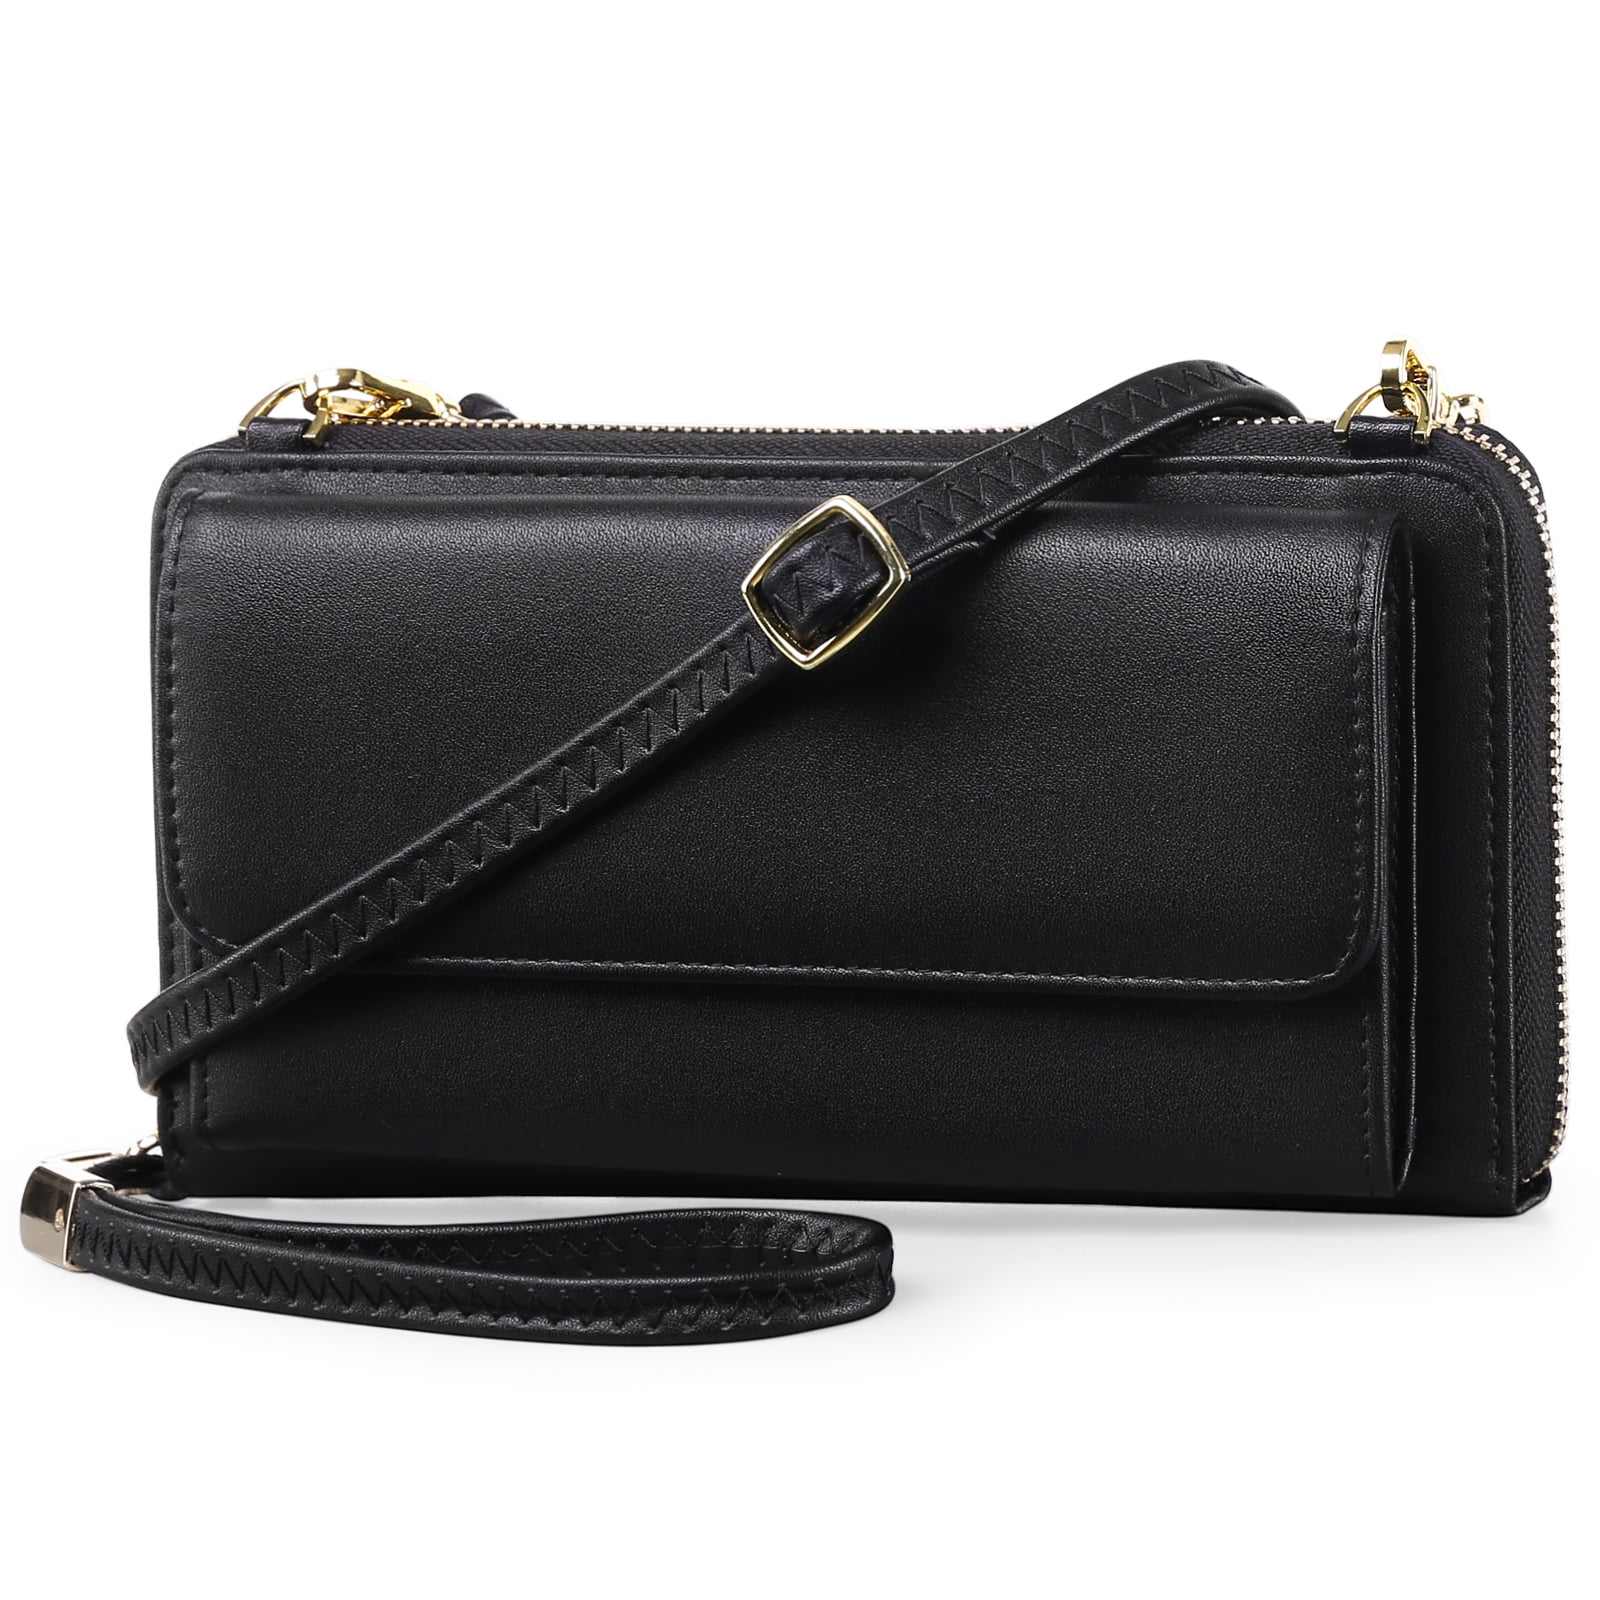 FALAN MULE Rfid Wallet Purse Wristlet Crossbody Bag for Women Leather ...